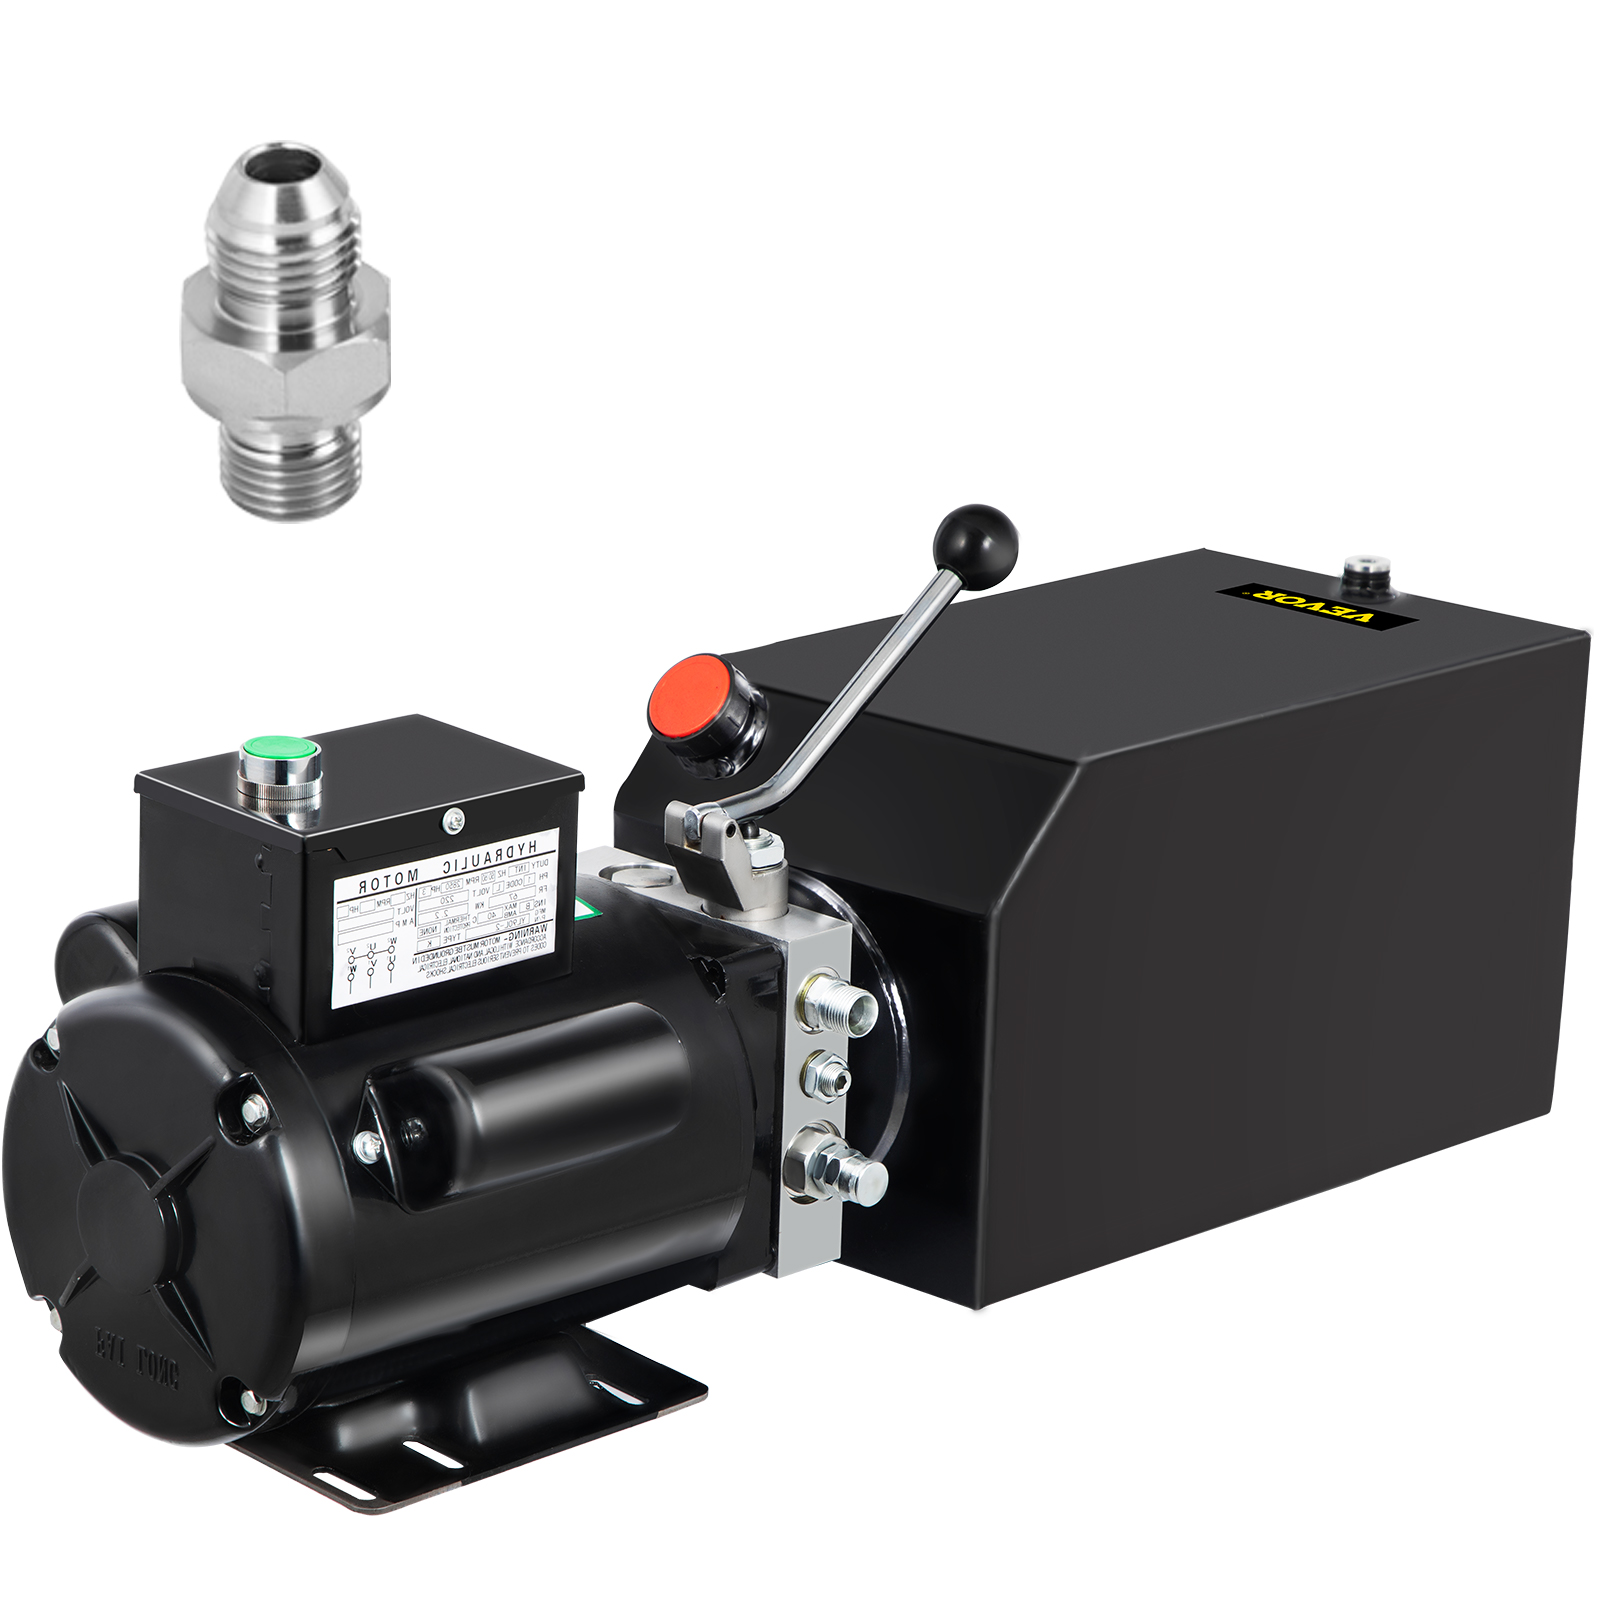 Auto Hoist Hydraulic Power Unit: 230V AC, 1 GPM Pump